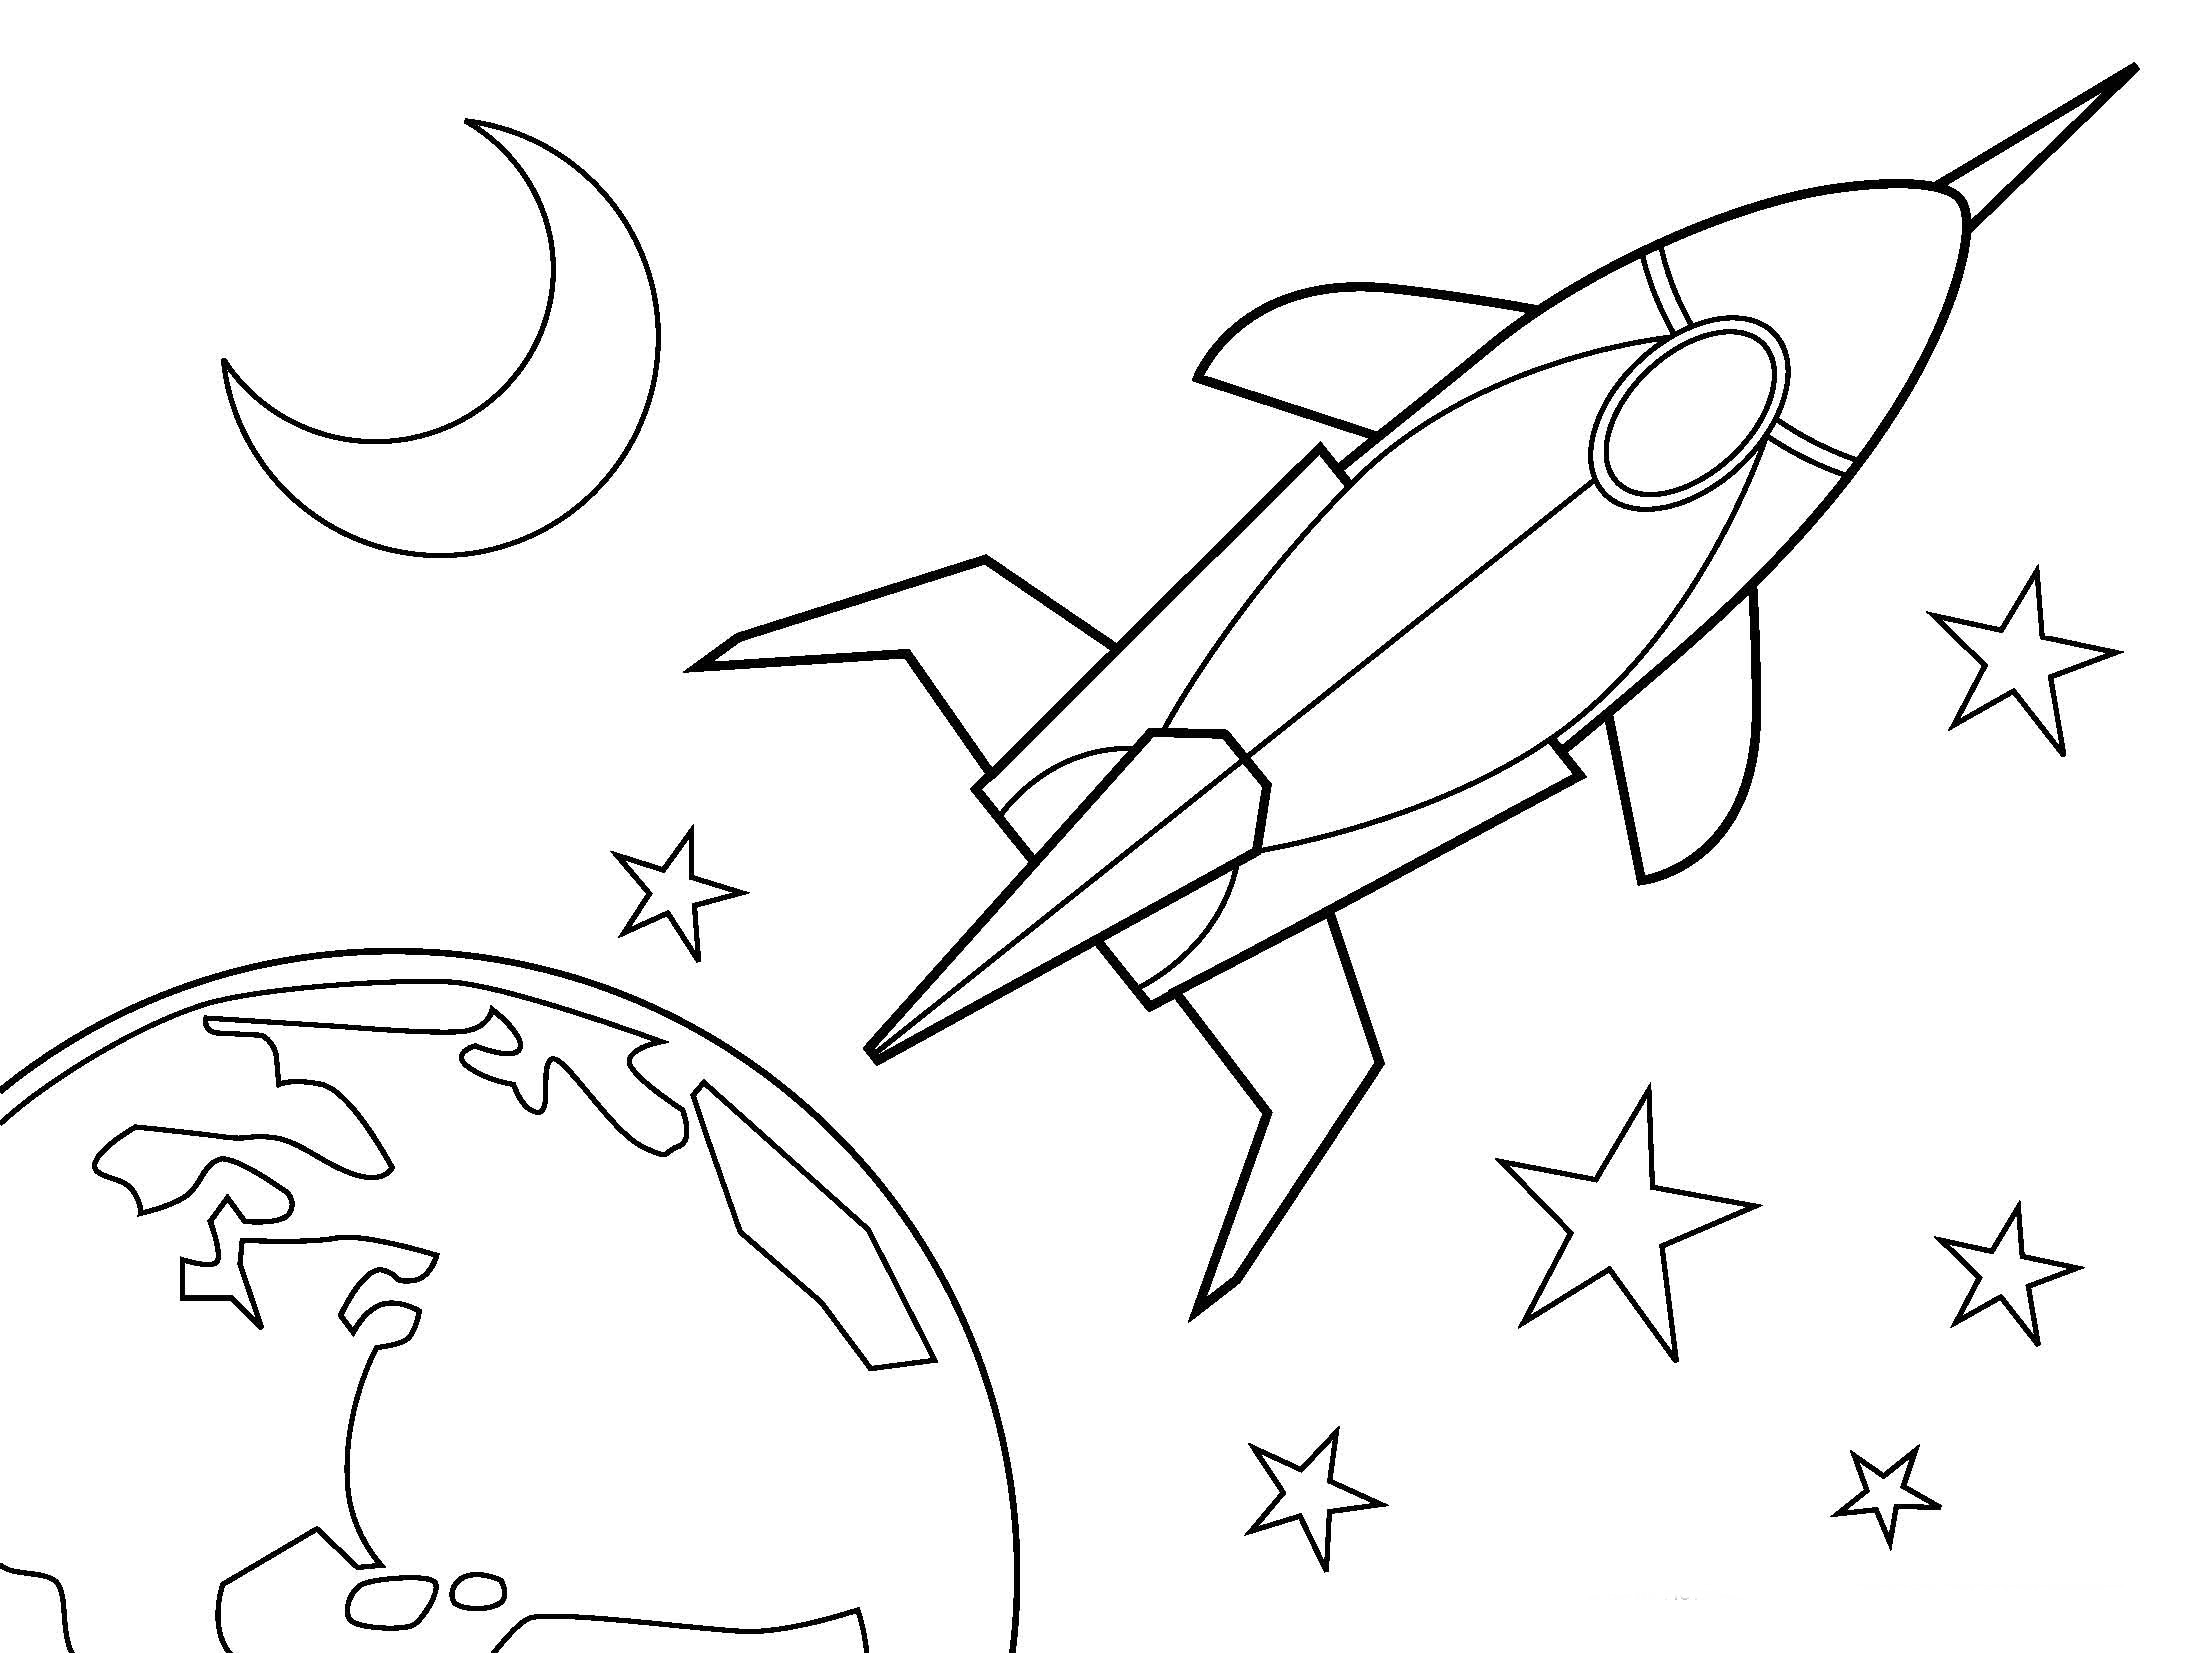 Раскраски 12 апреля день космонавтики для детей. Космос раскраска для детей. Раскраска. В космосе. Раскраска для малышей. Космос. Детские раскраски космос.